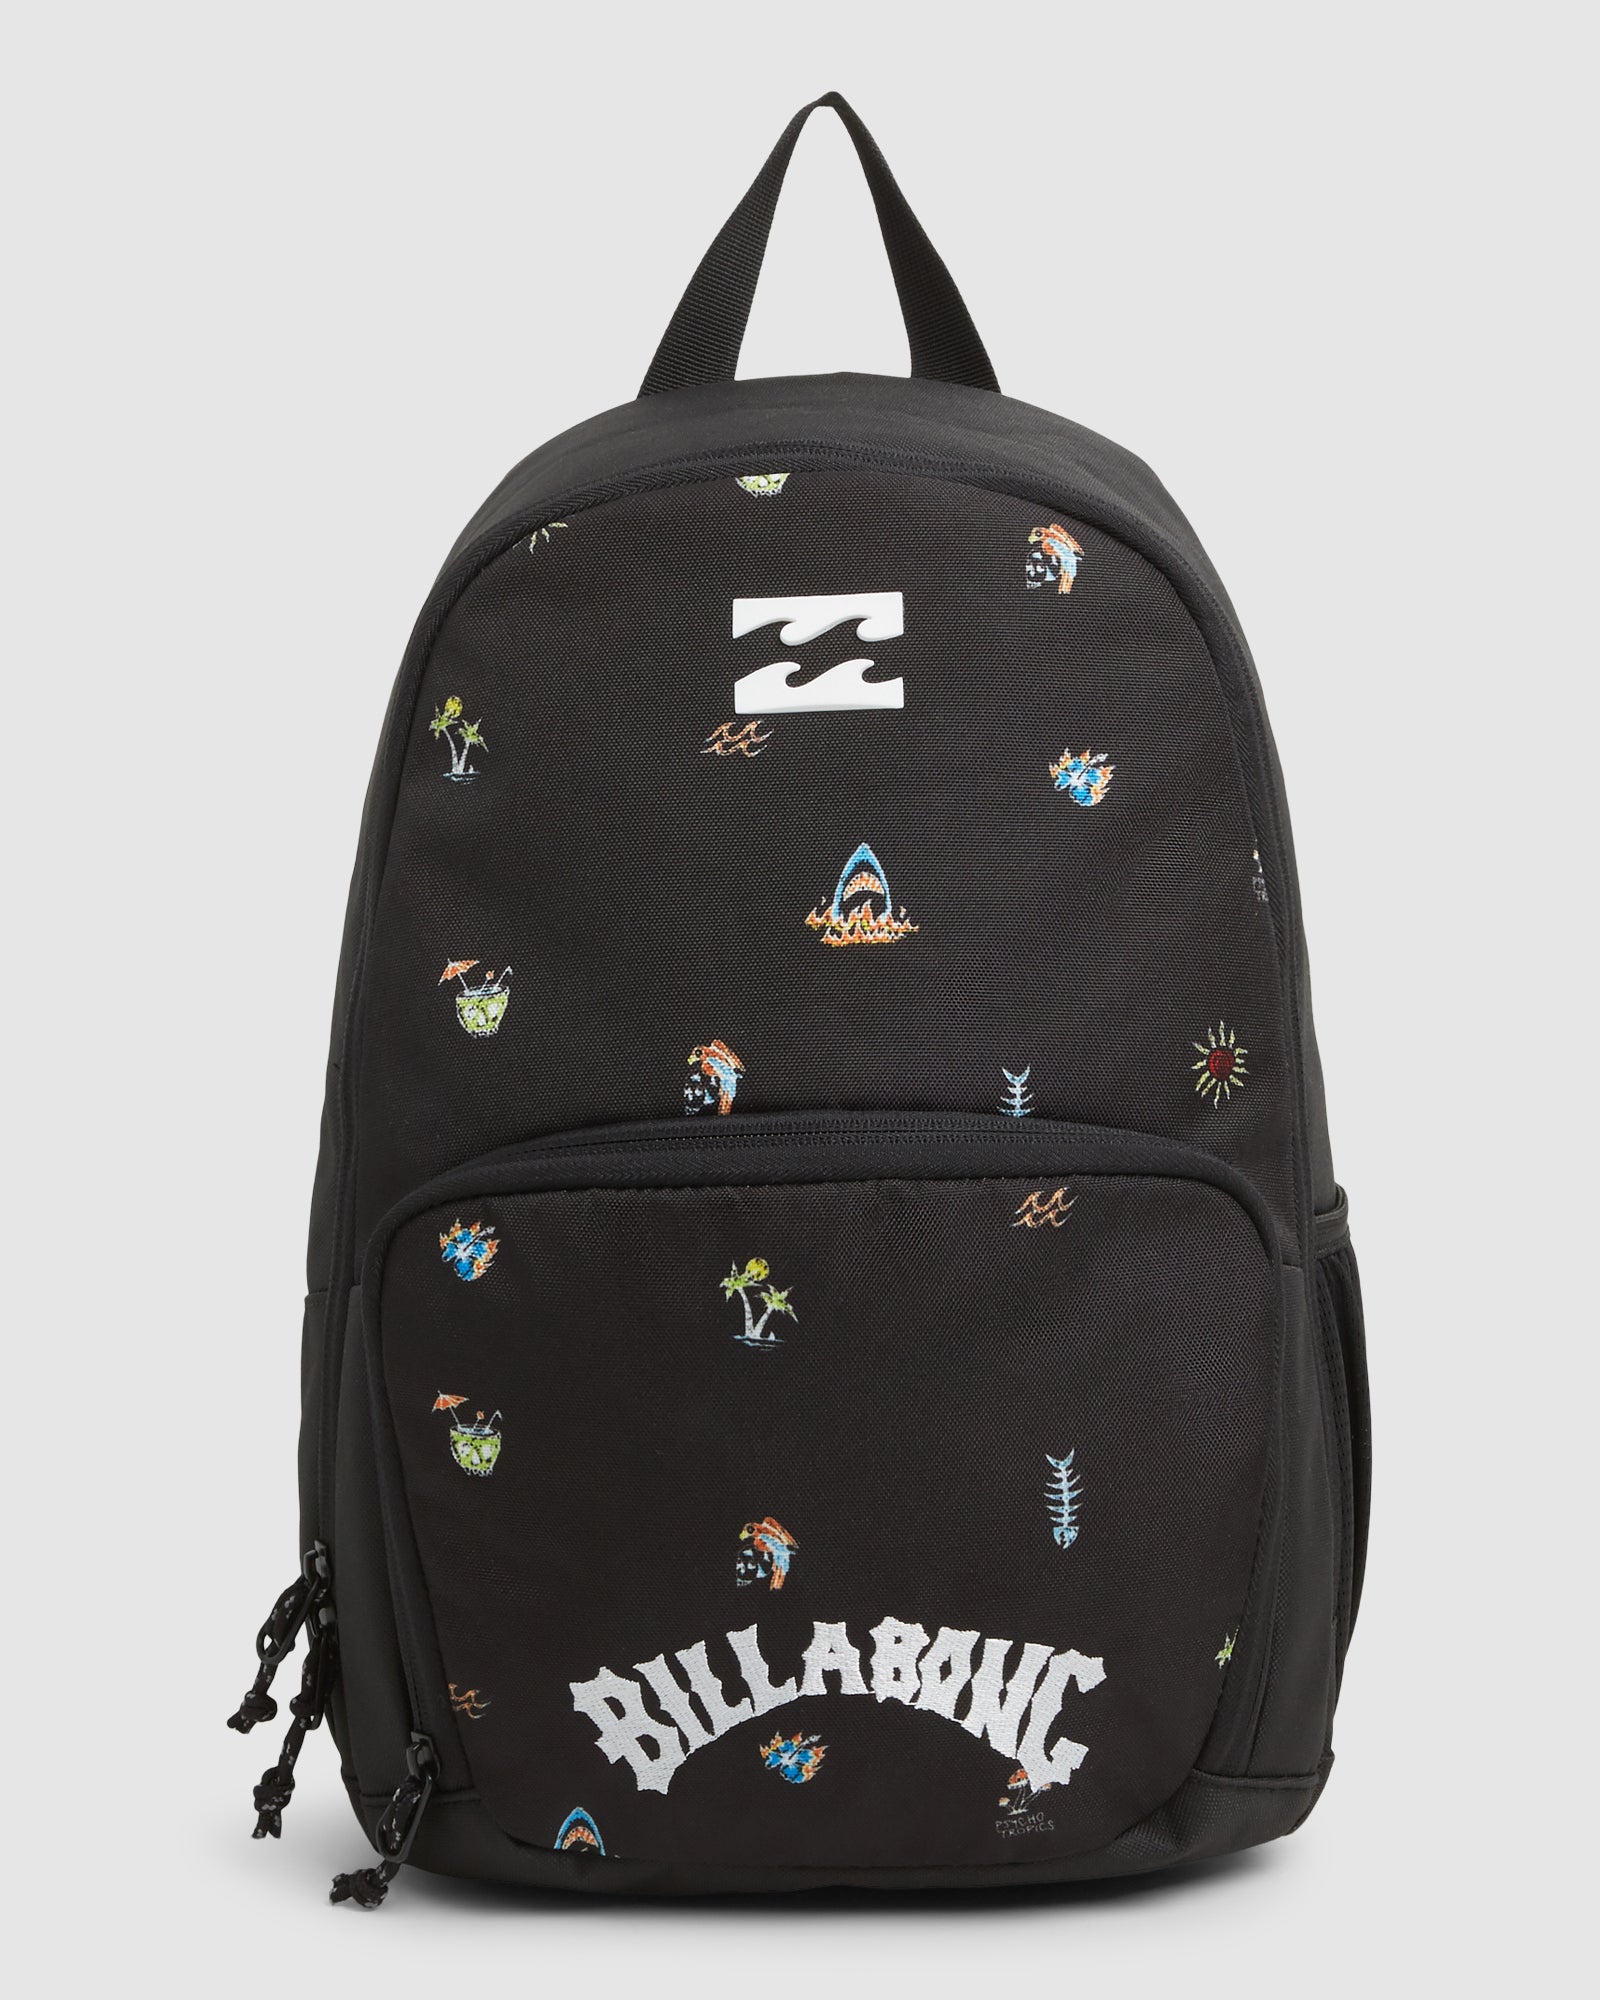 Billabong Groms Backpack 7603001A